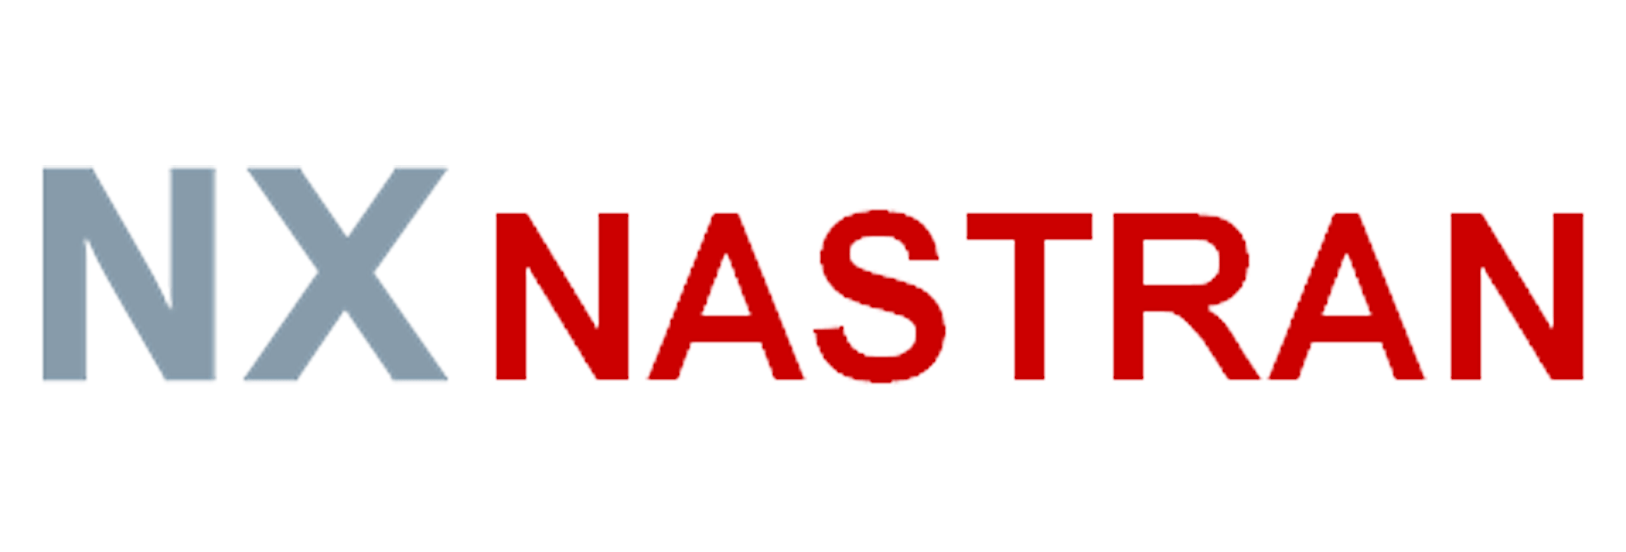 NX-Nastran